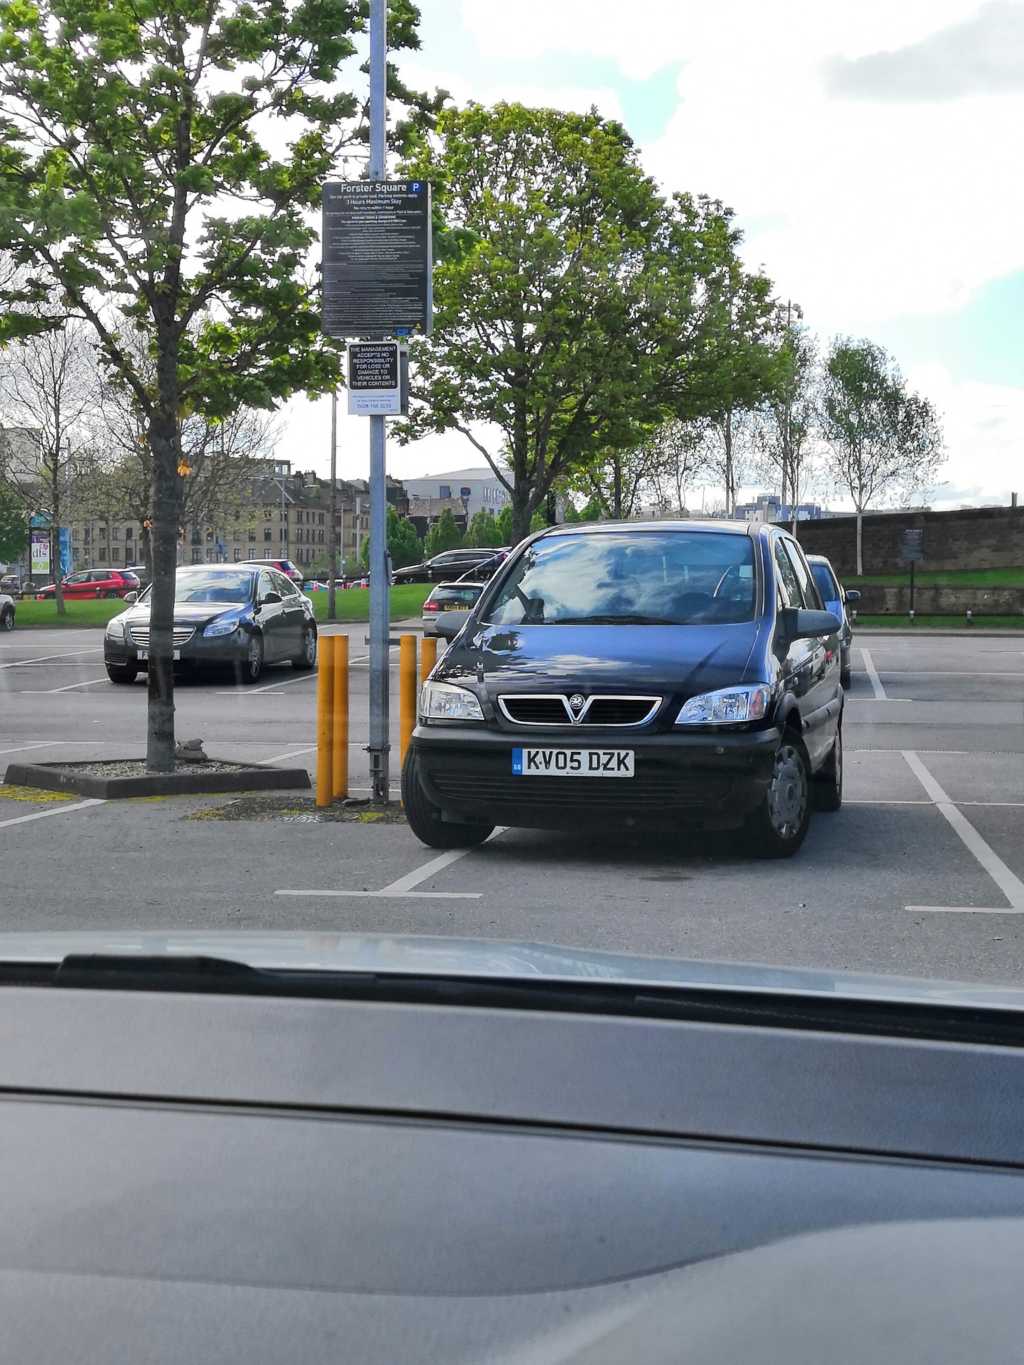 KV05 DZK displaying Selfish Parking